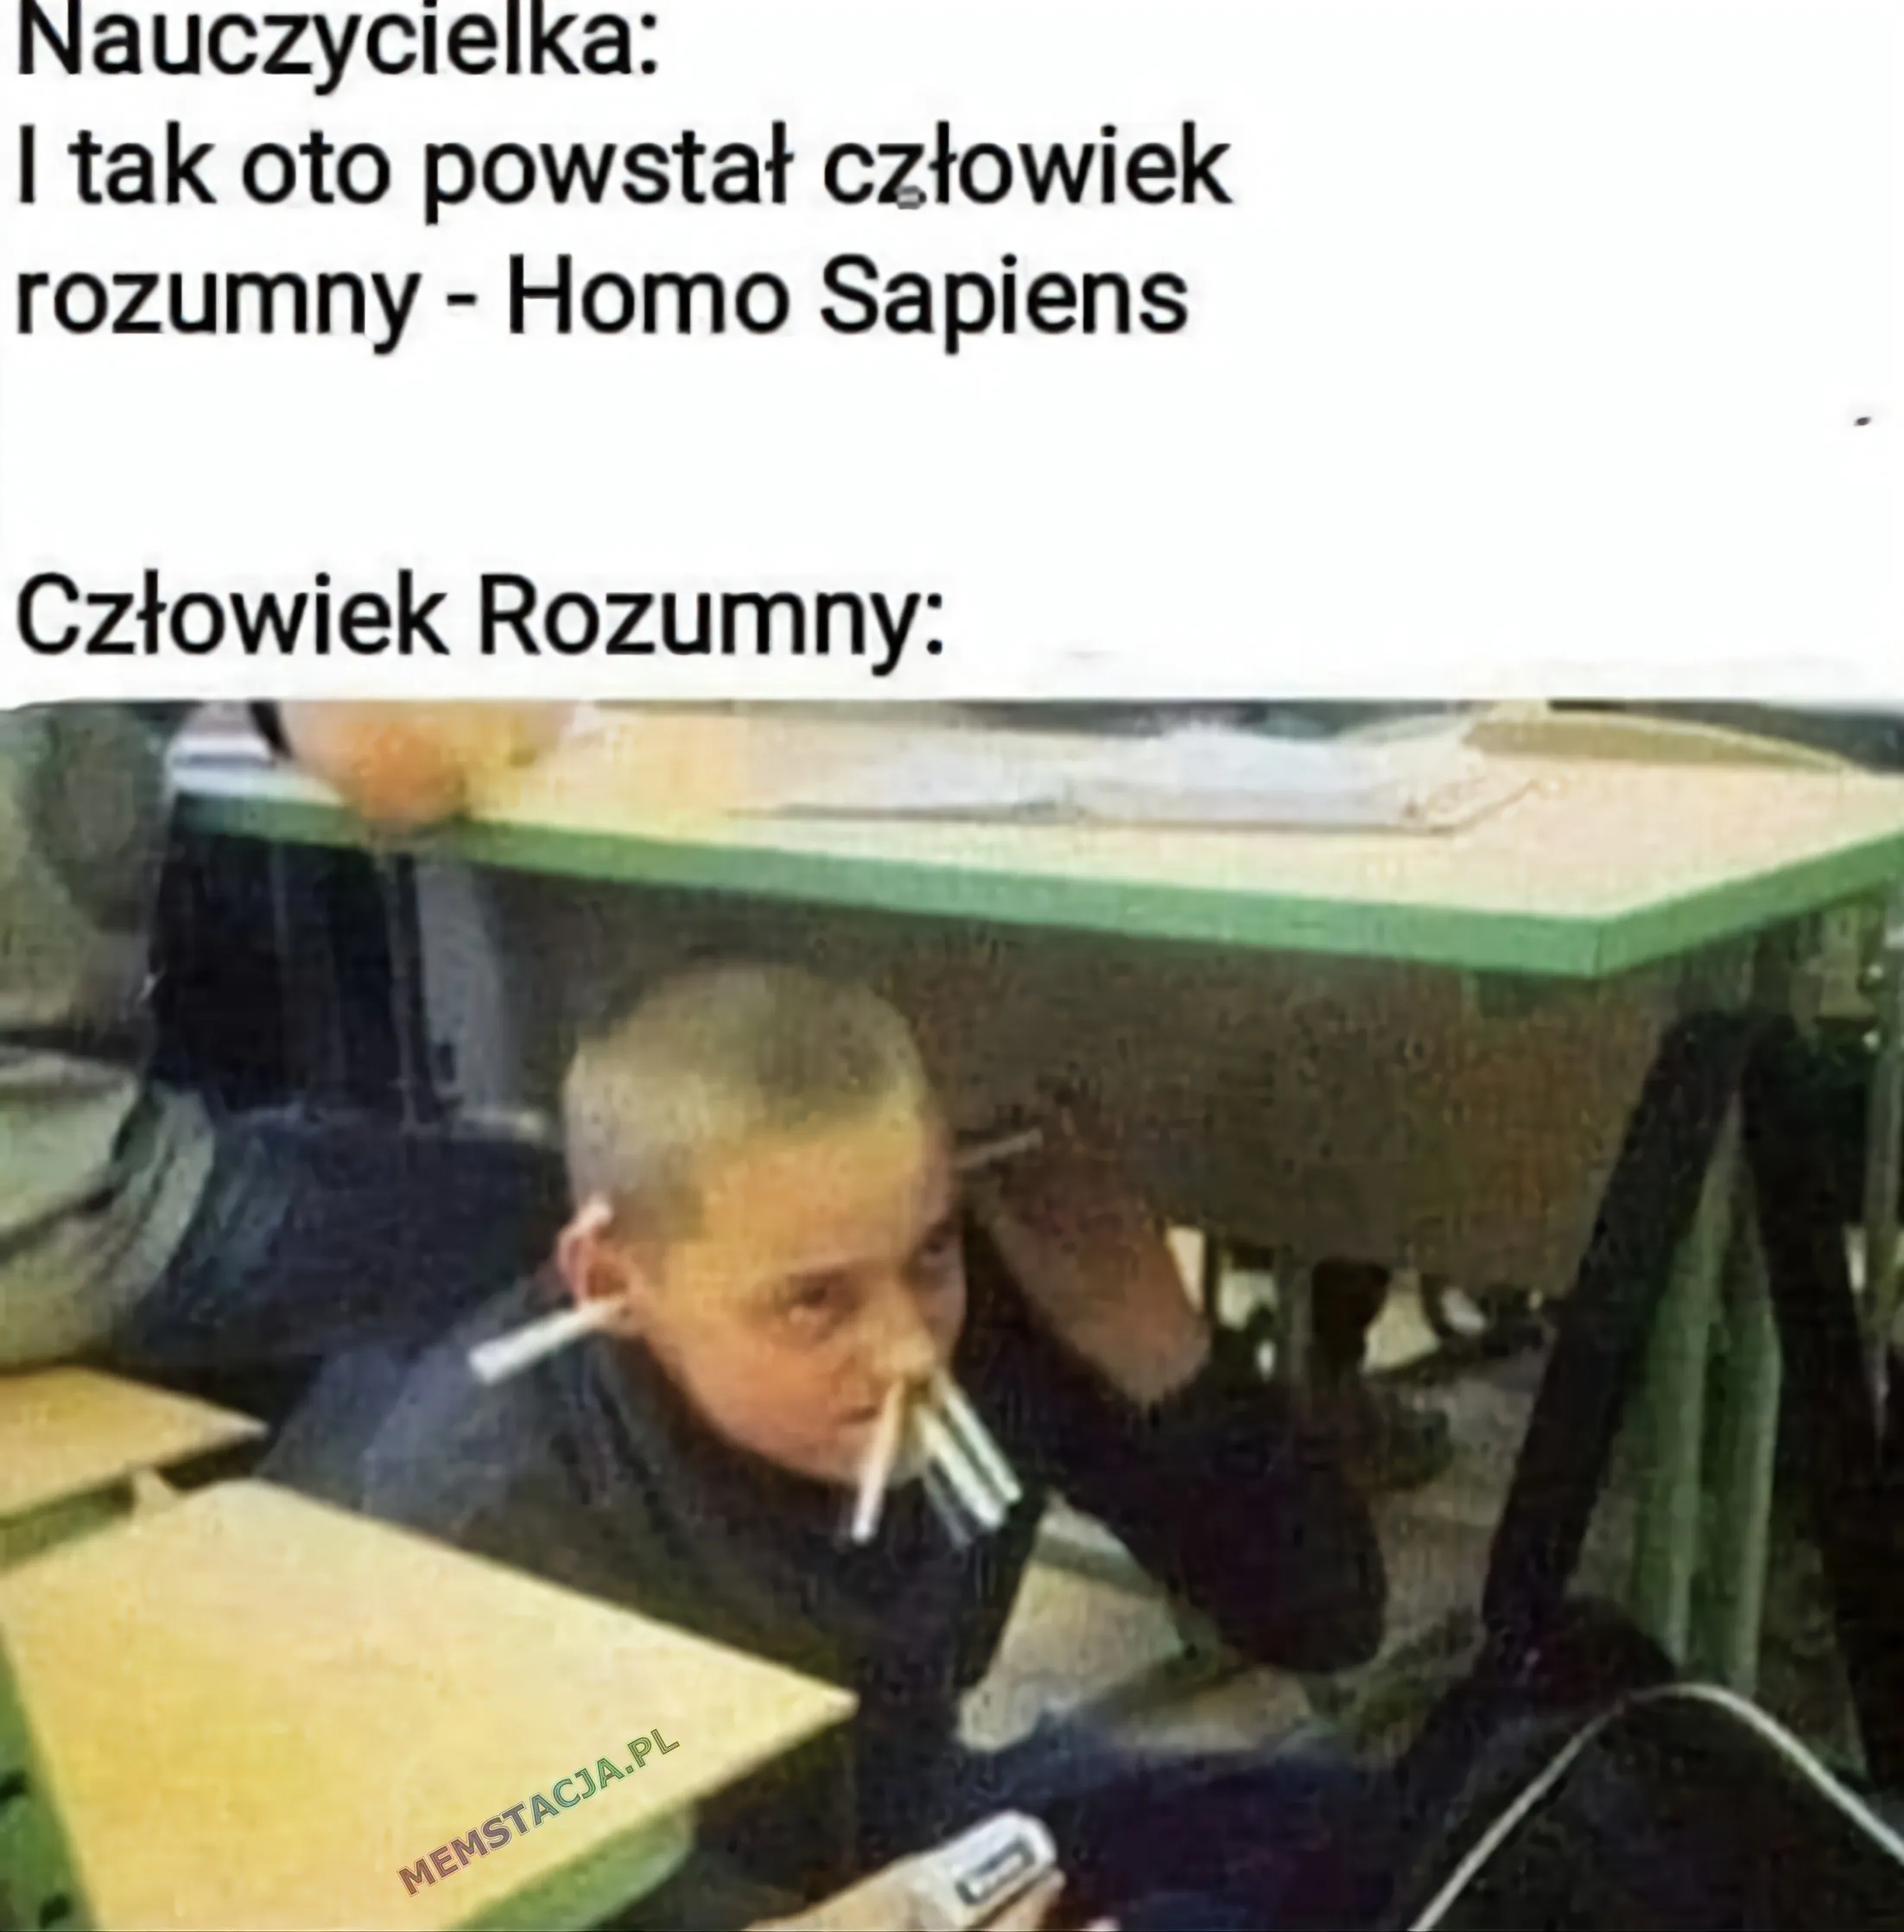 Zdjęcie chłopaka pod ławką szkolną: 'Nauczycielka: I tak oto powsał człowiek rozumny - Homo Sapiens'